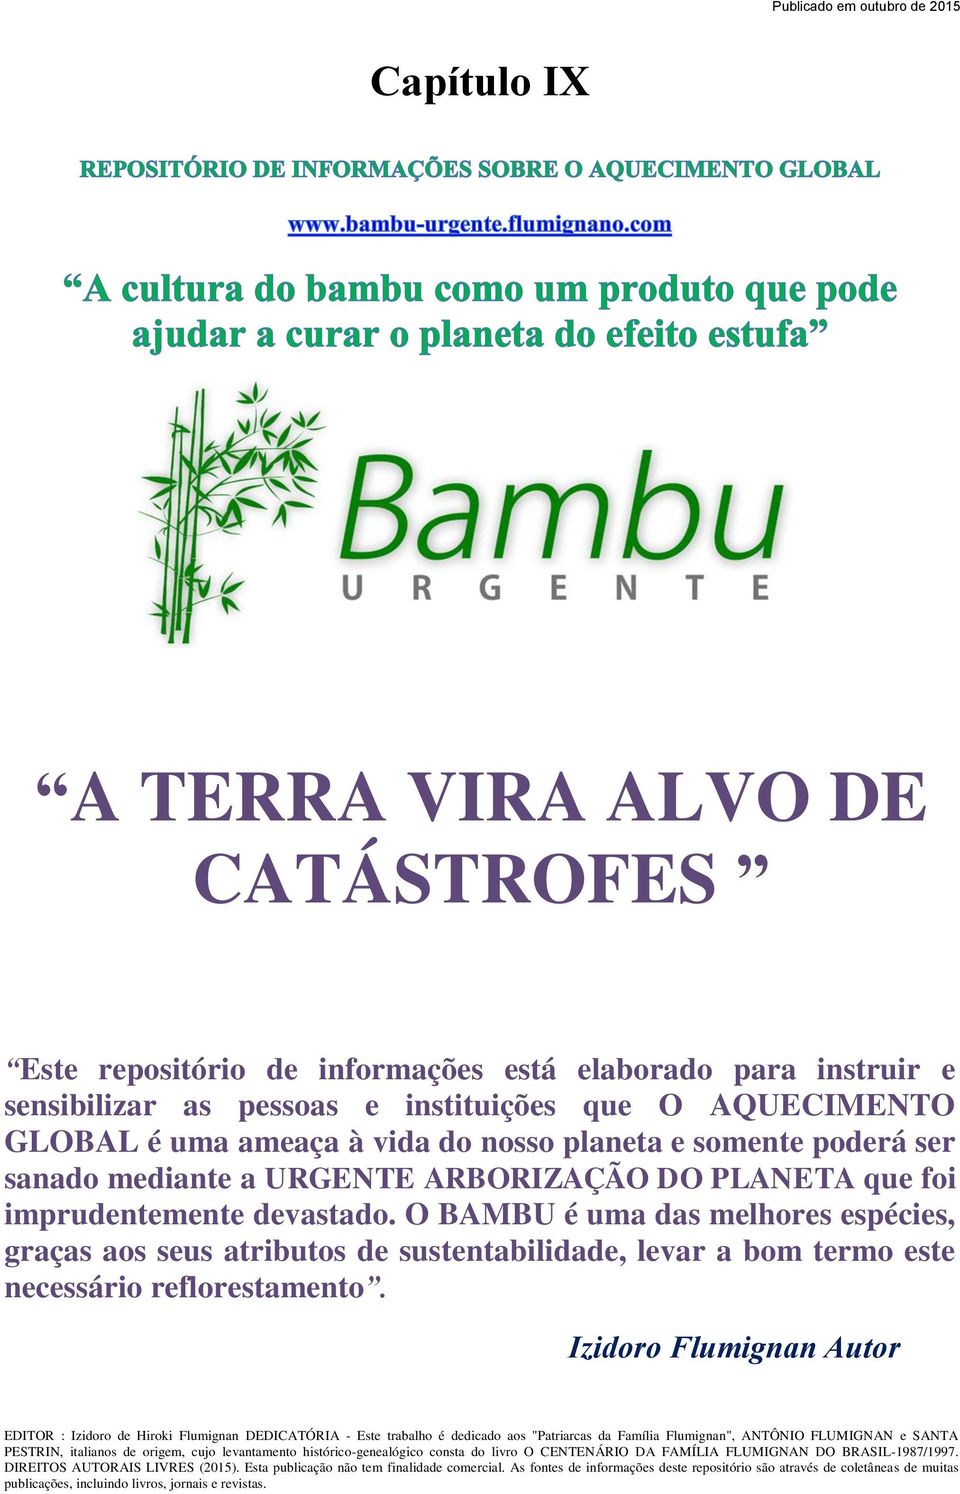 O BAMBU é uma das melhores espécies, graças aos seus atributos de sustentabilidade, levar a bom termo este necessário reflorestamento.